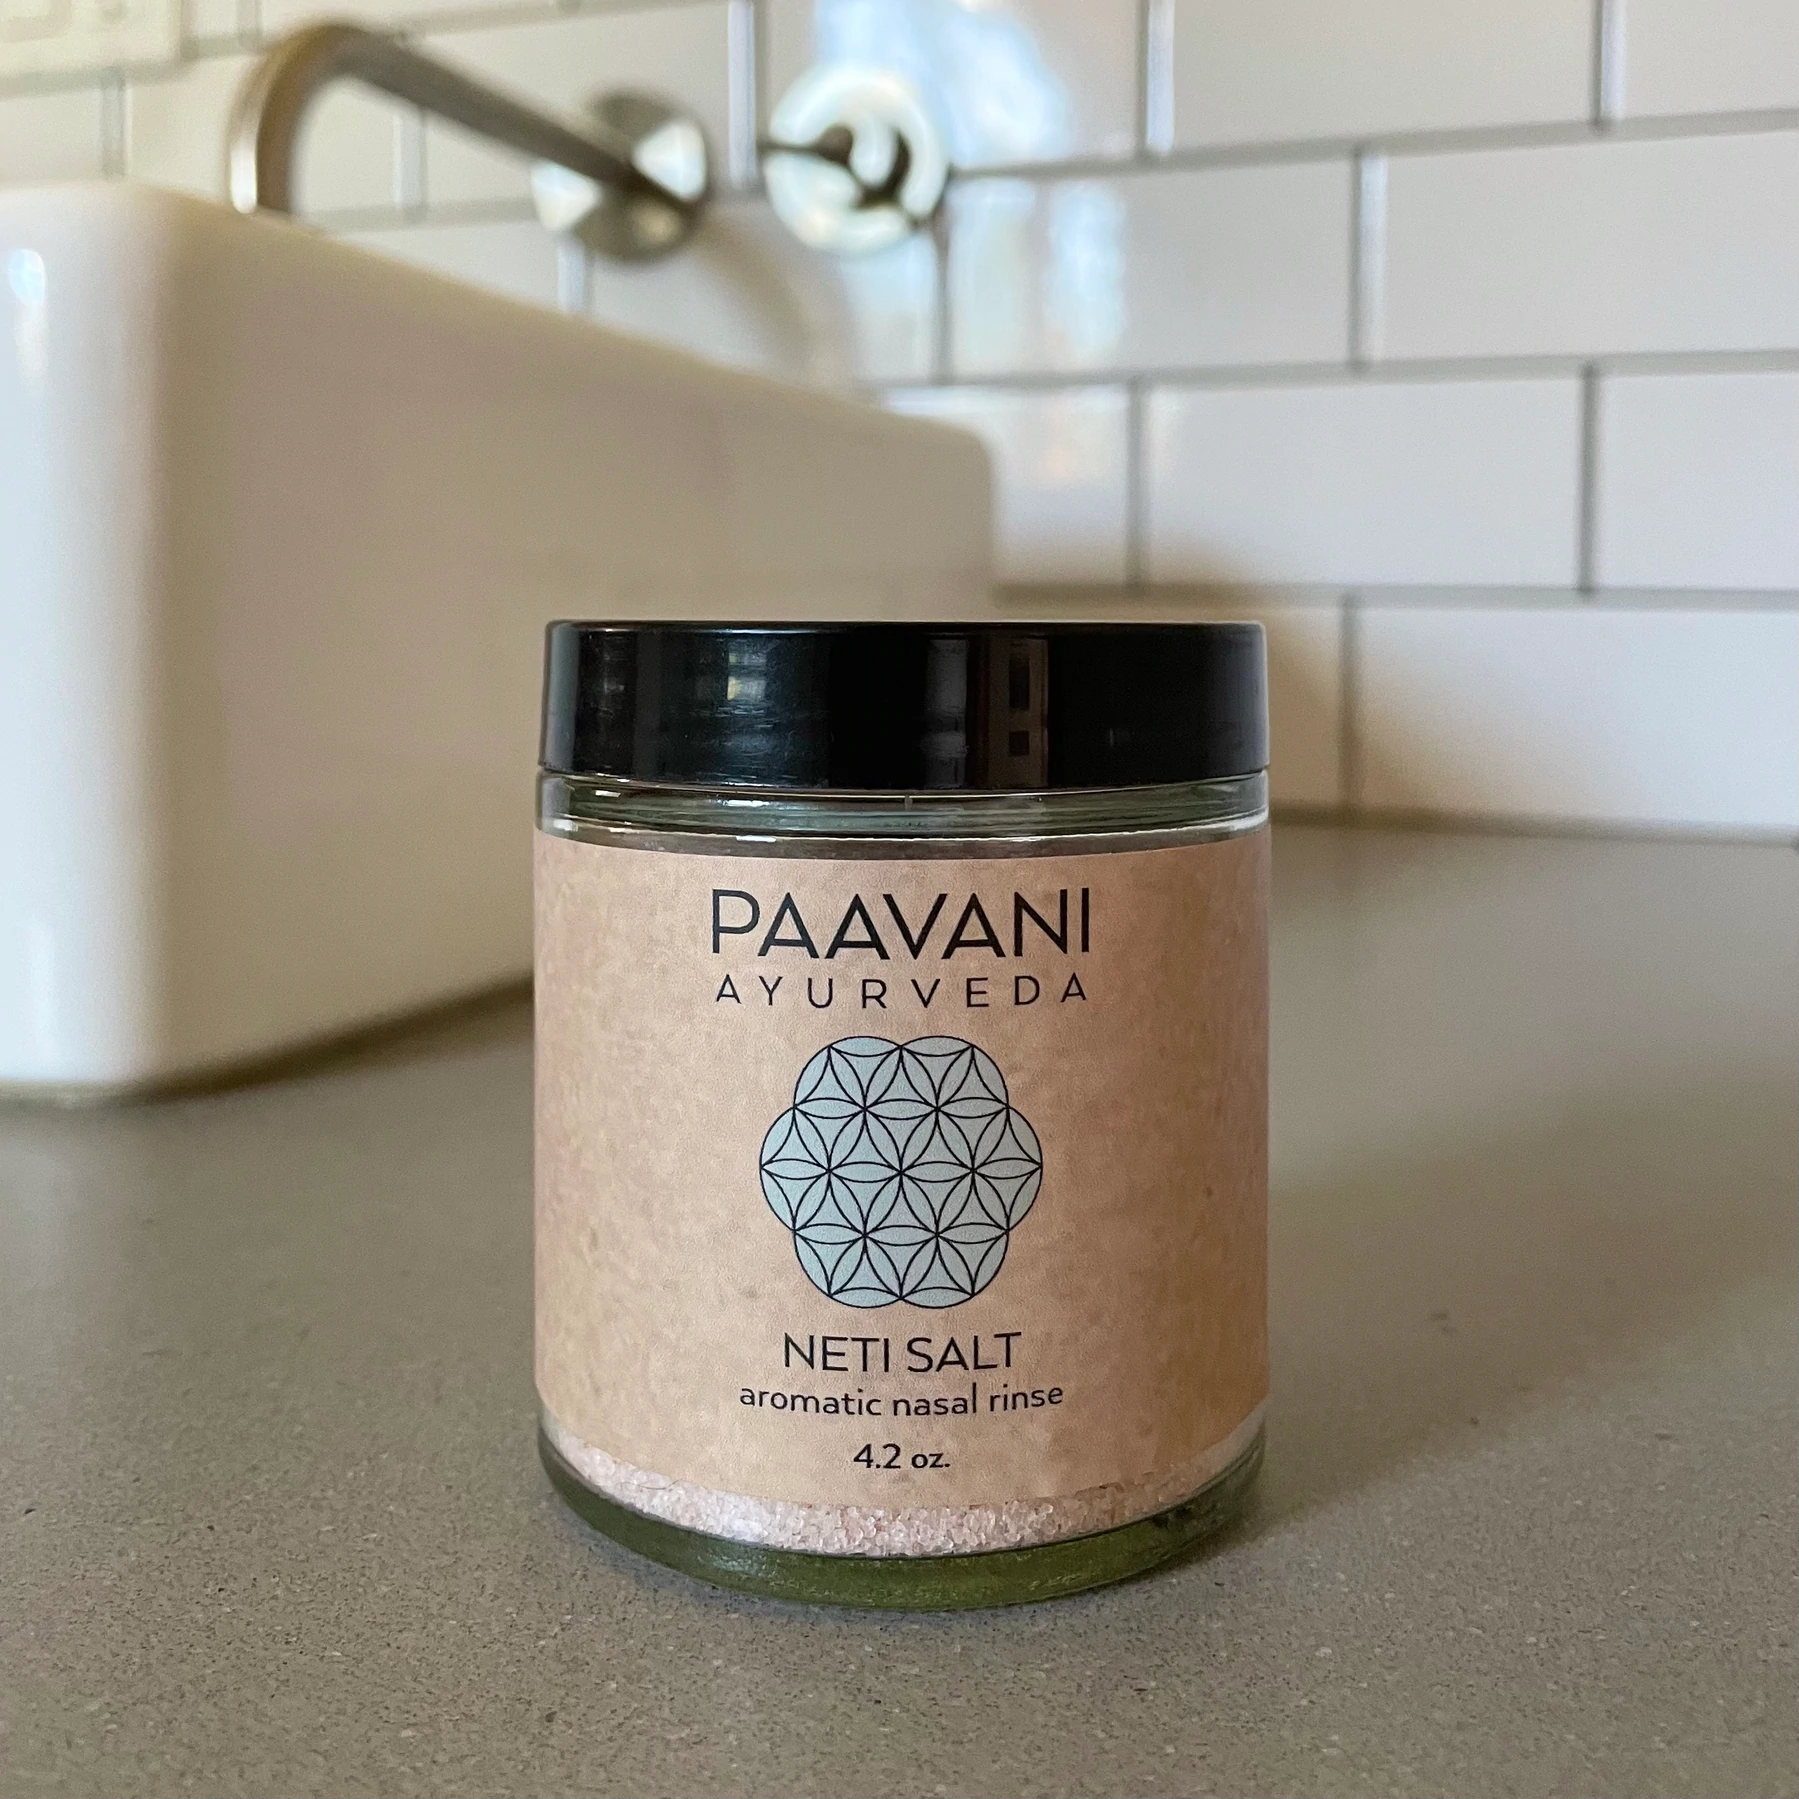 Aromatic Neti Salt – Paavani Ayurveda